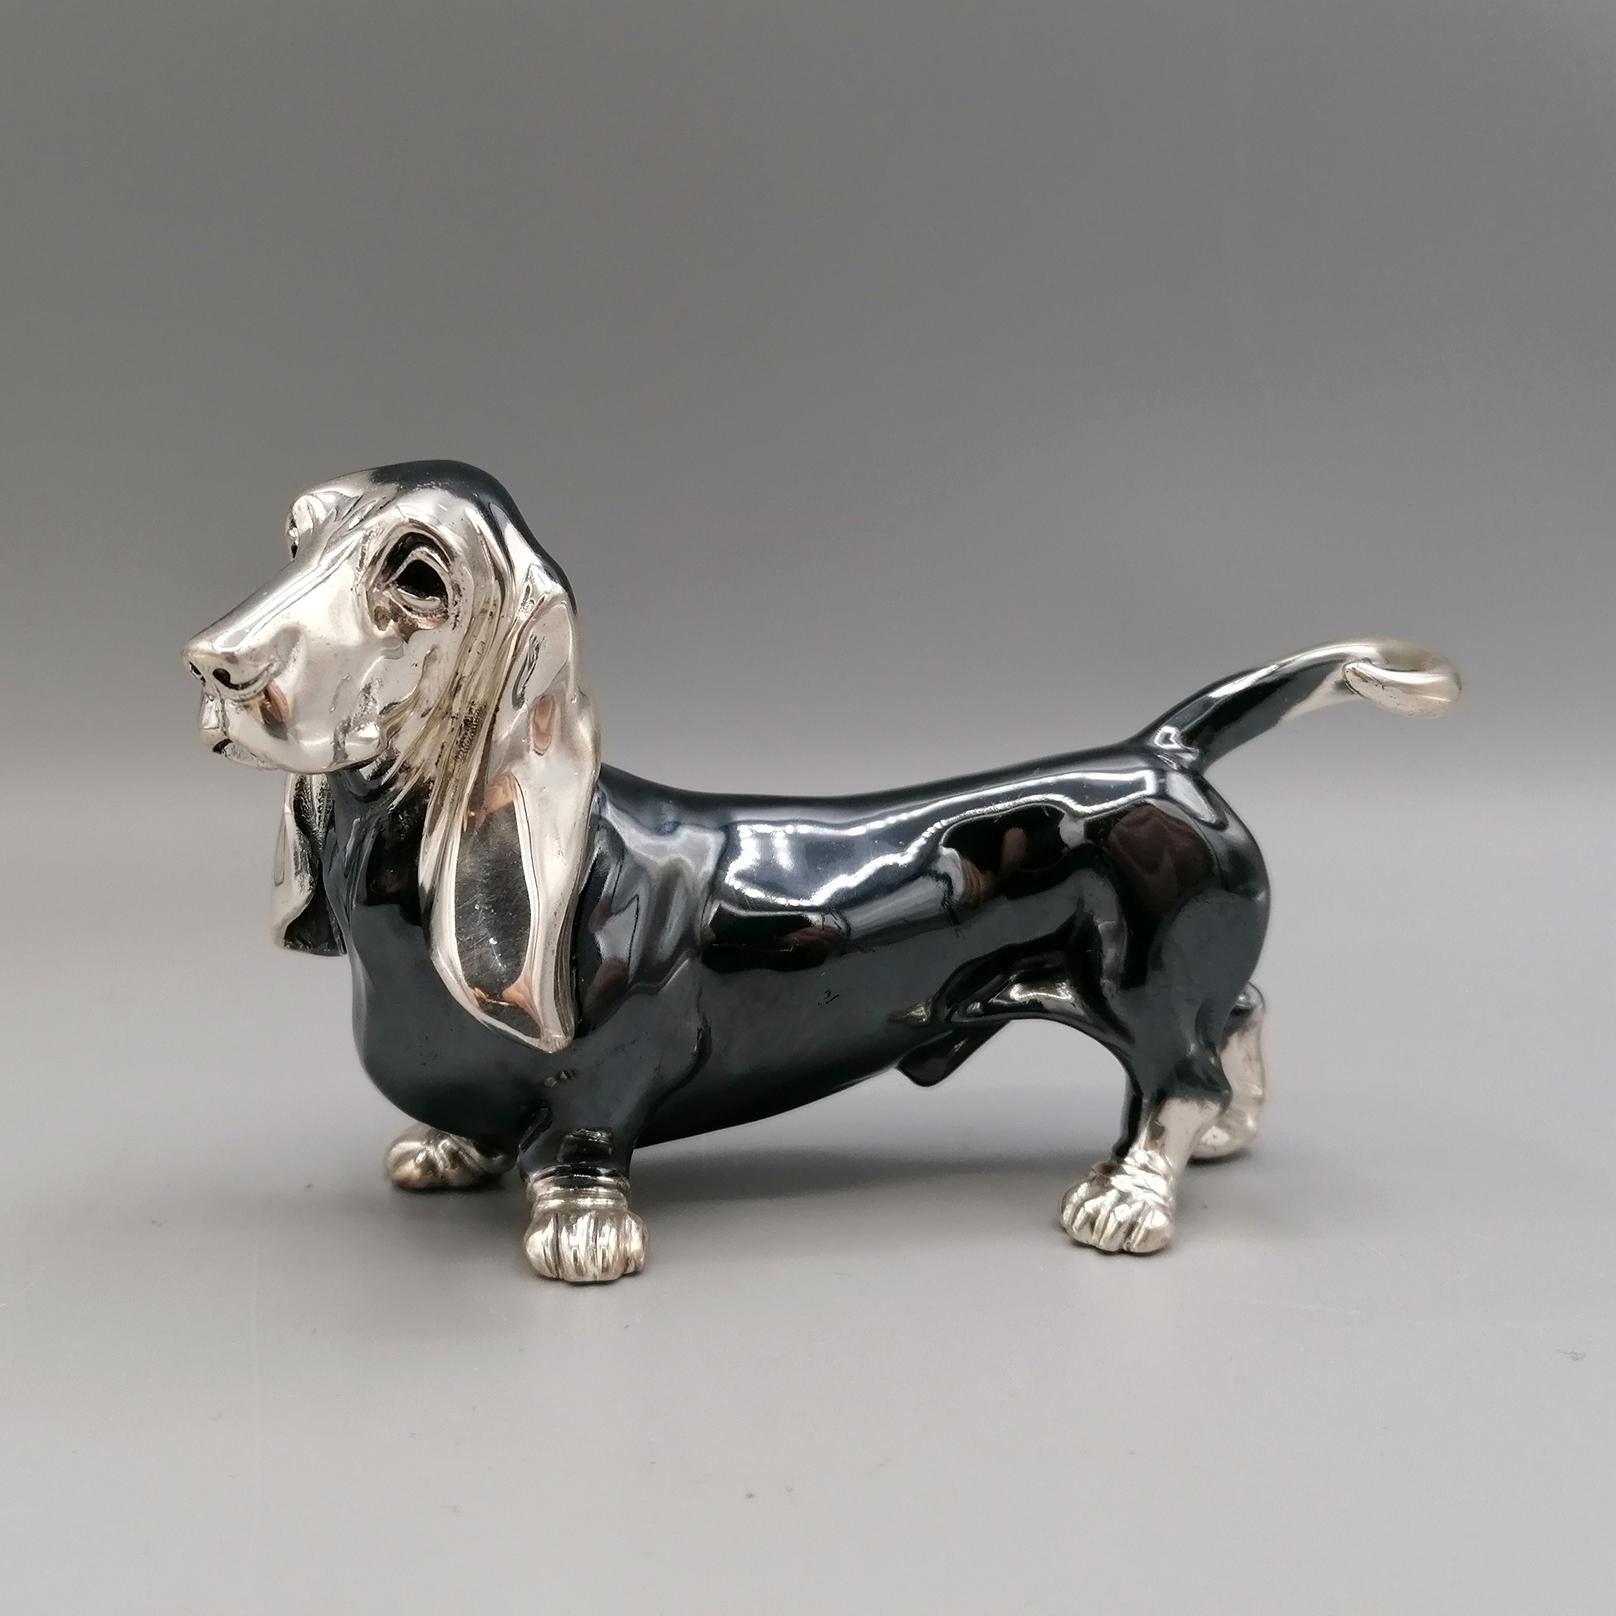 Basset Hound Hundestatuette aus massivem 800er Silber.
Das Objekt wurde mit der Technik des Schmelzens in zwei Hälften hergestellt und anschließend durch Schweißen verbunden. 
Im unteren Teil der Statuette sind die beiden Löcher zu sehen, durch die